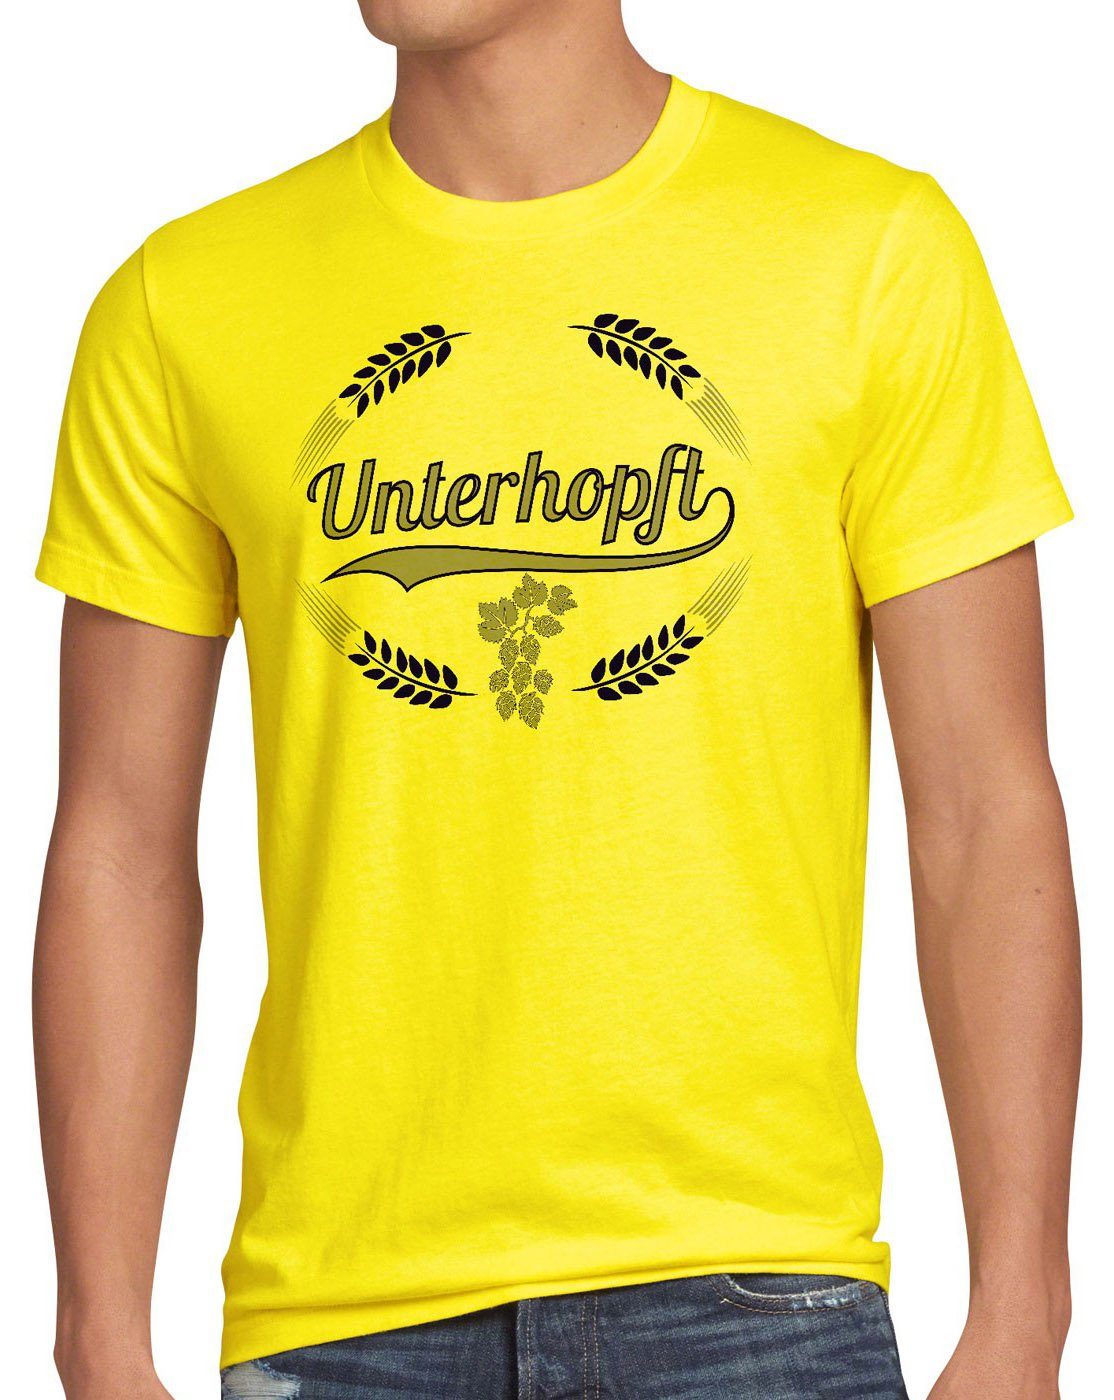 style3 Print-Shirt Herren T-Shirt Unterhopft Kult Shirt Funshirt Bier Hopfen Spruch Fun Malz Fest gelb